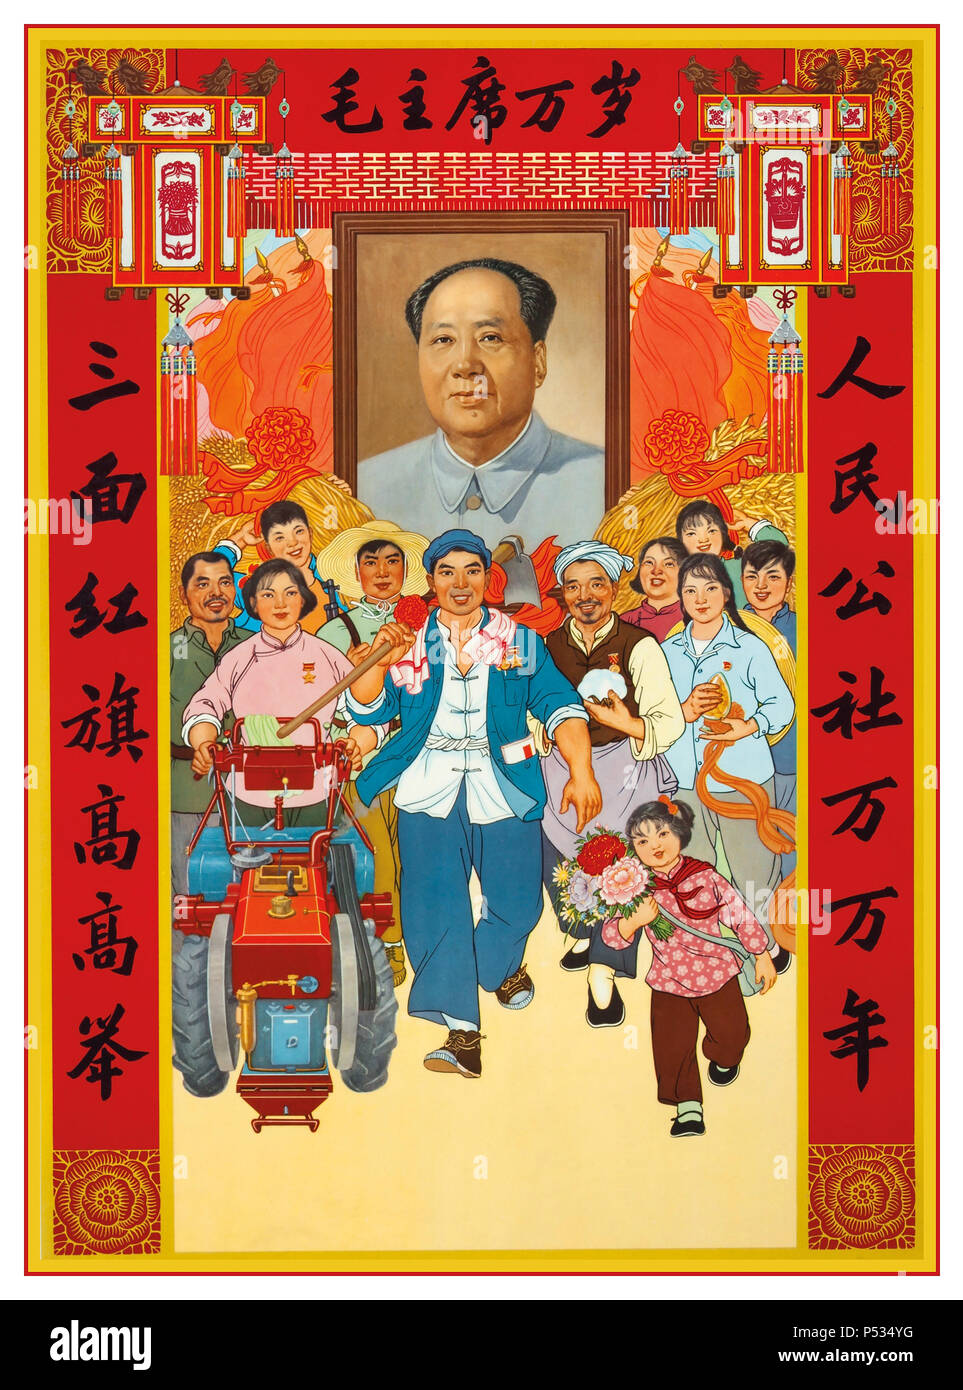 Vintage Chairman Mao Chinesisches Kommunistisches Propagandaplakat ‘Großer Lehrer Großartig Das idealistische kommunistische Propagandaplakat des Großkommandanten der 1960er Jahre, das Mao förderte Zedong als Führer des kommunistischen China mit Schar von glücklich Lächelnde Arbeiter und Familien Stockfoto